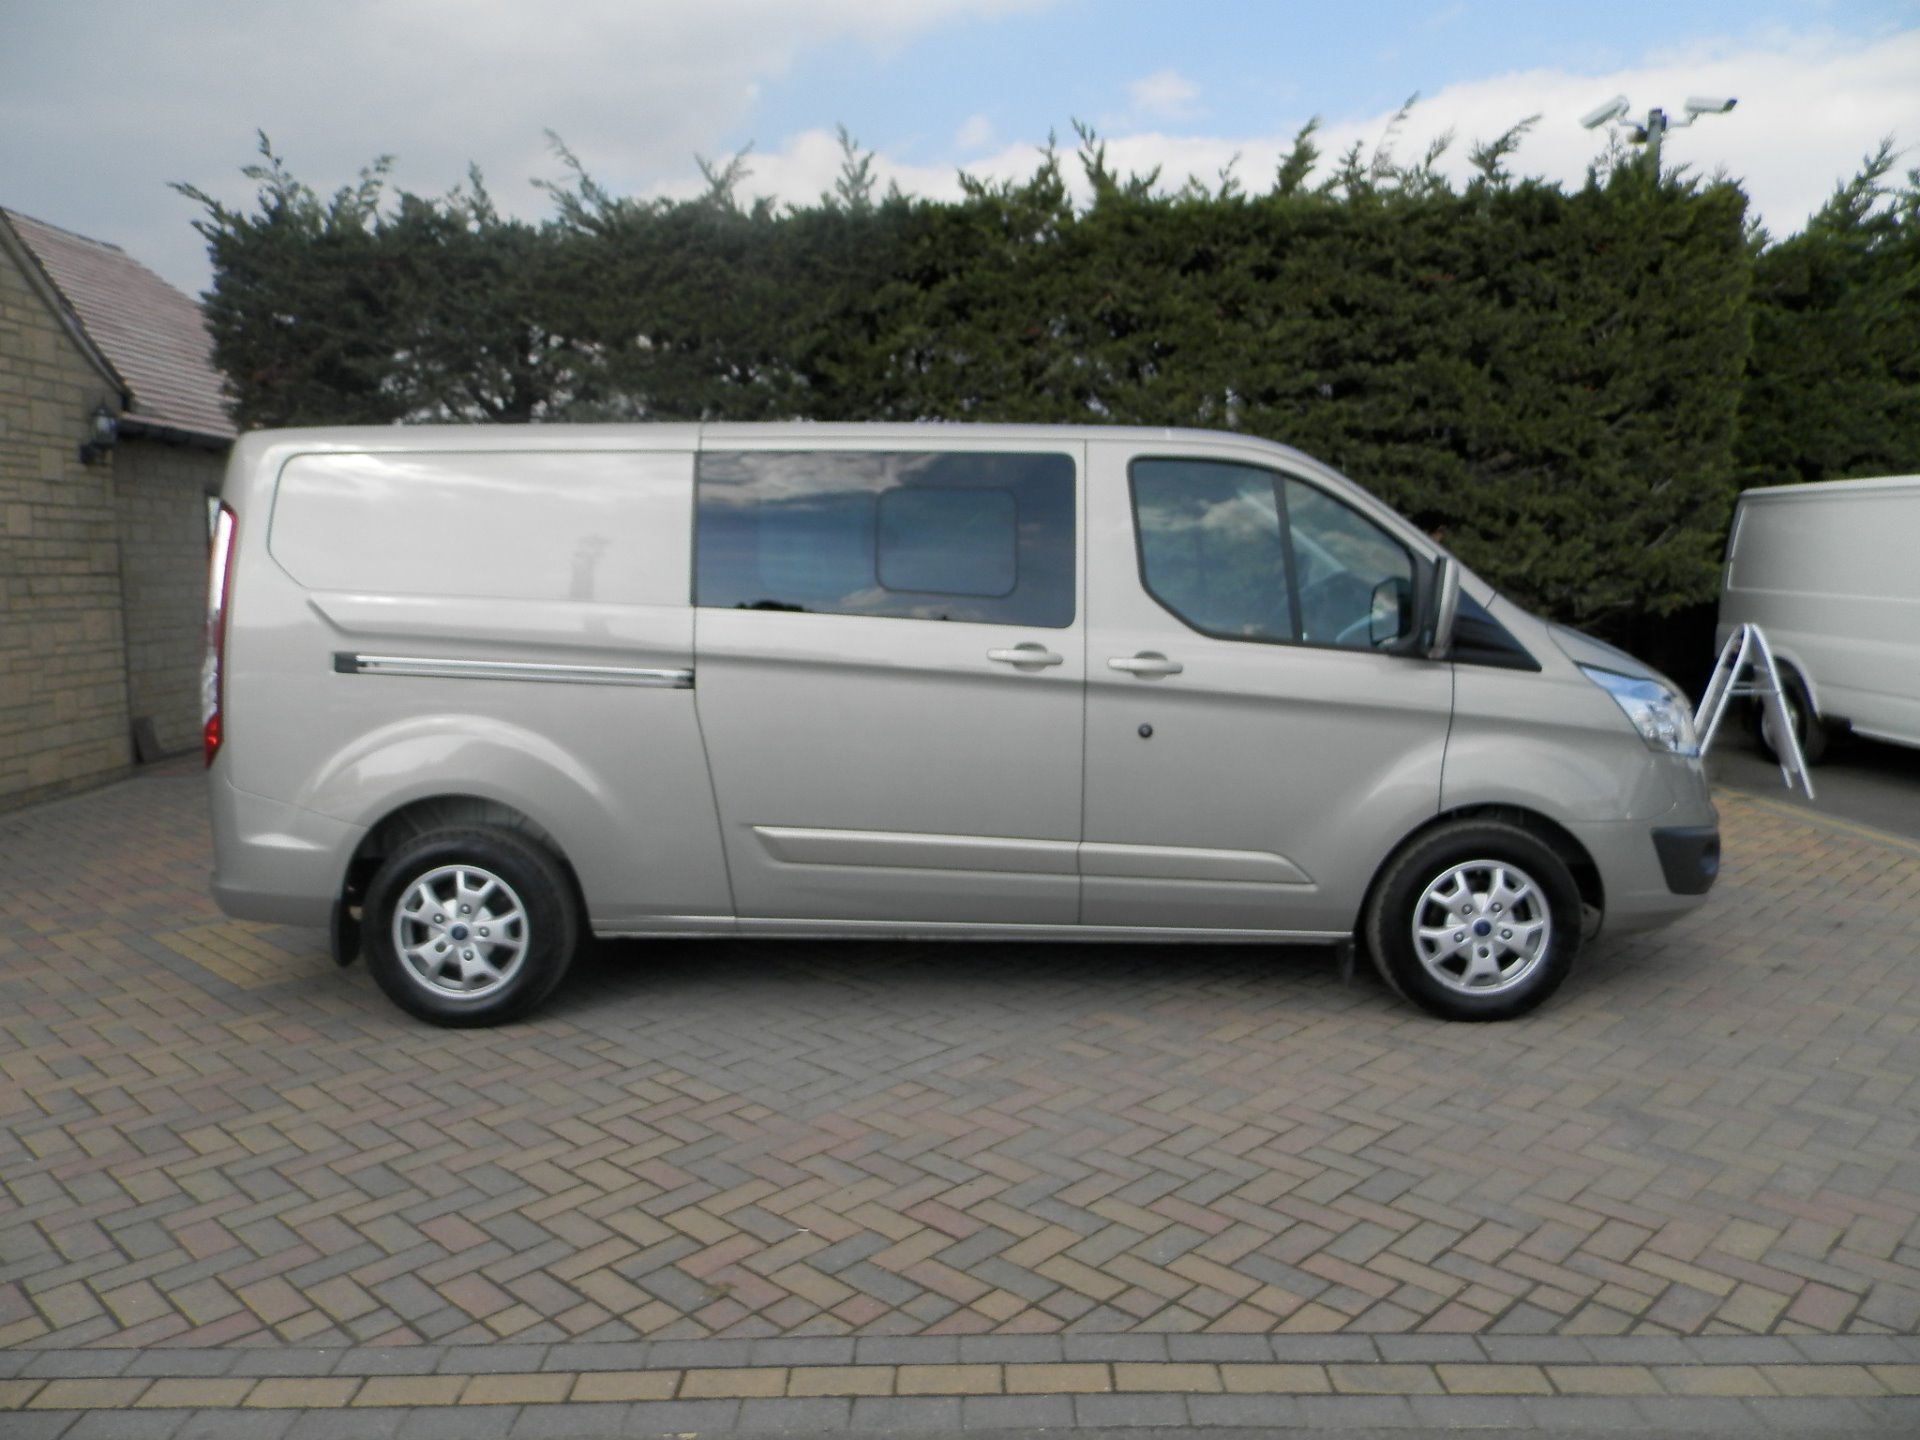 double cab vans for sale uk